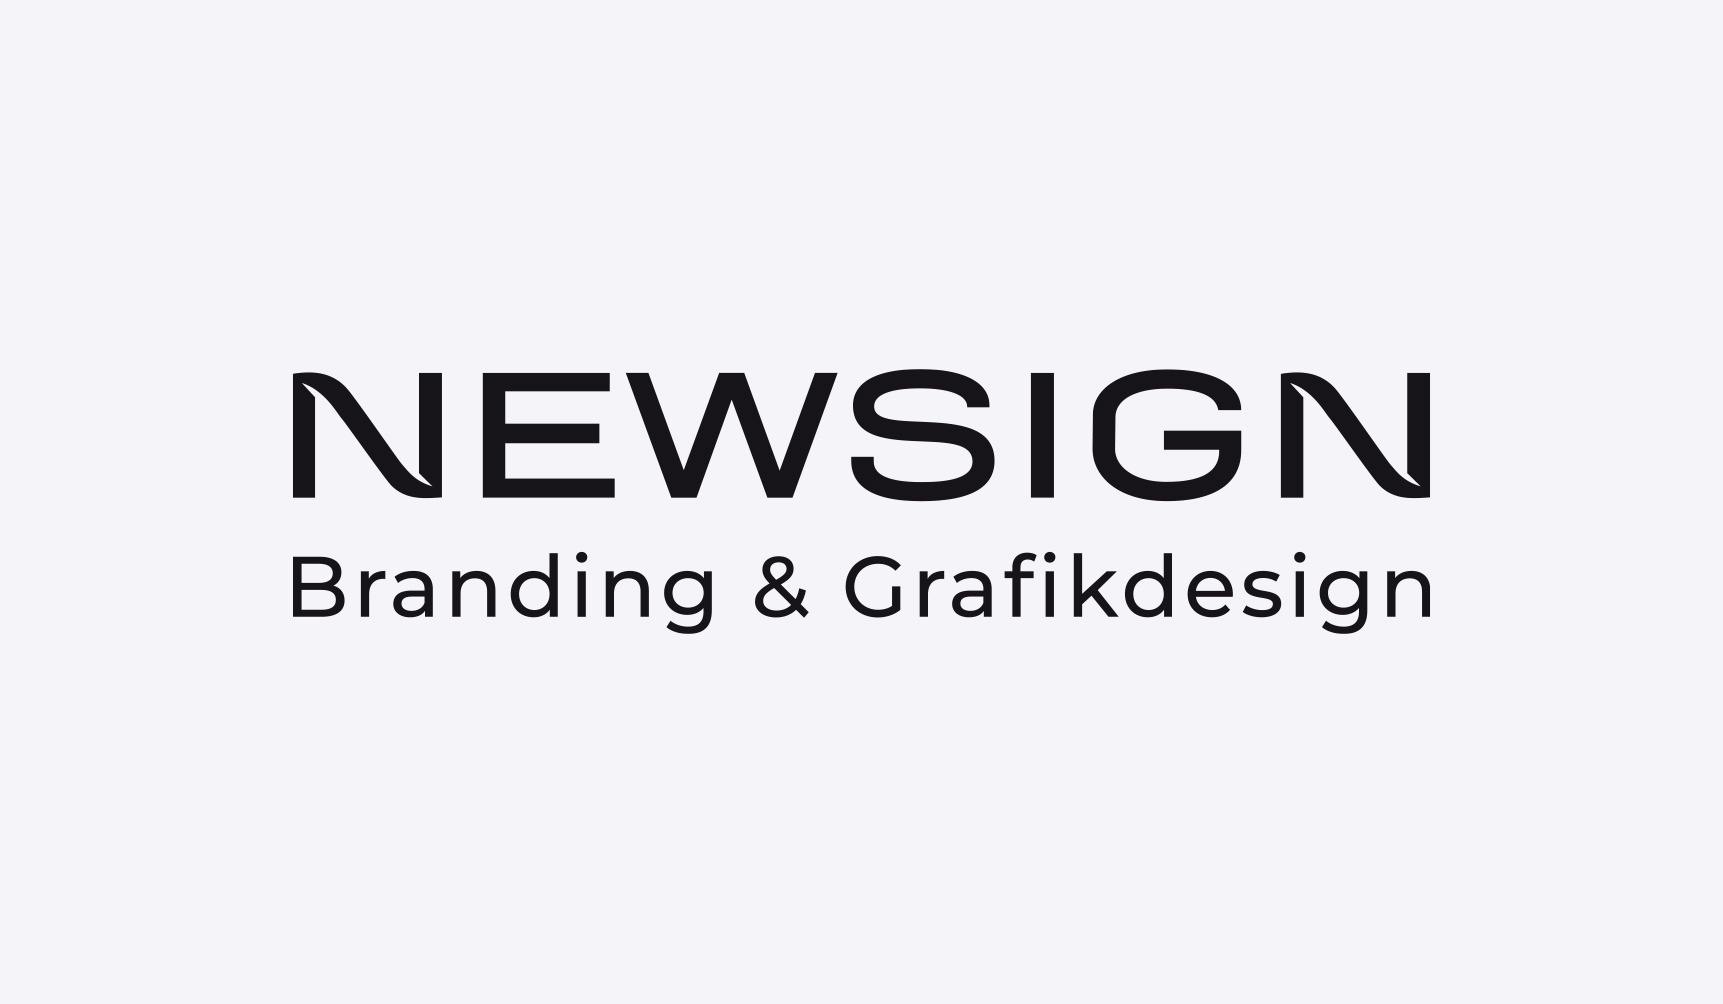 Newsign – Branding & Grafikdesign